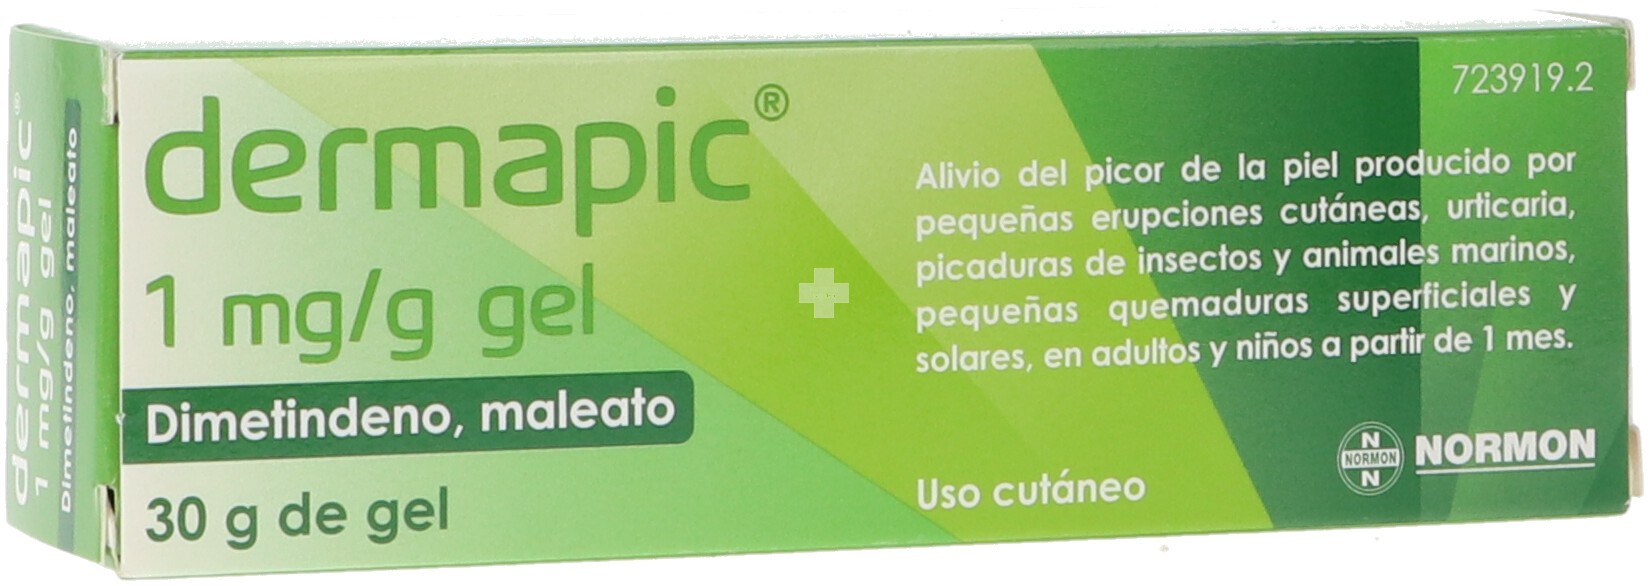 Dermapic 1 mg/G gel - 1 Tubo De 30 g